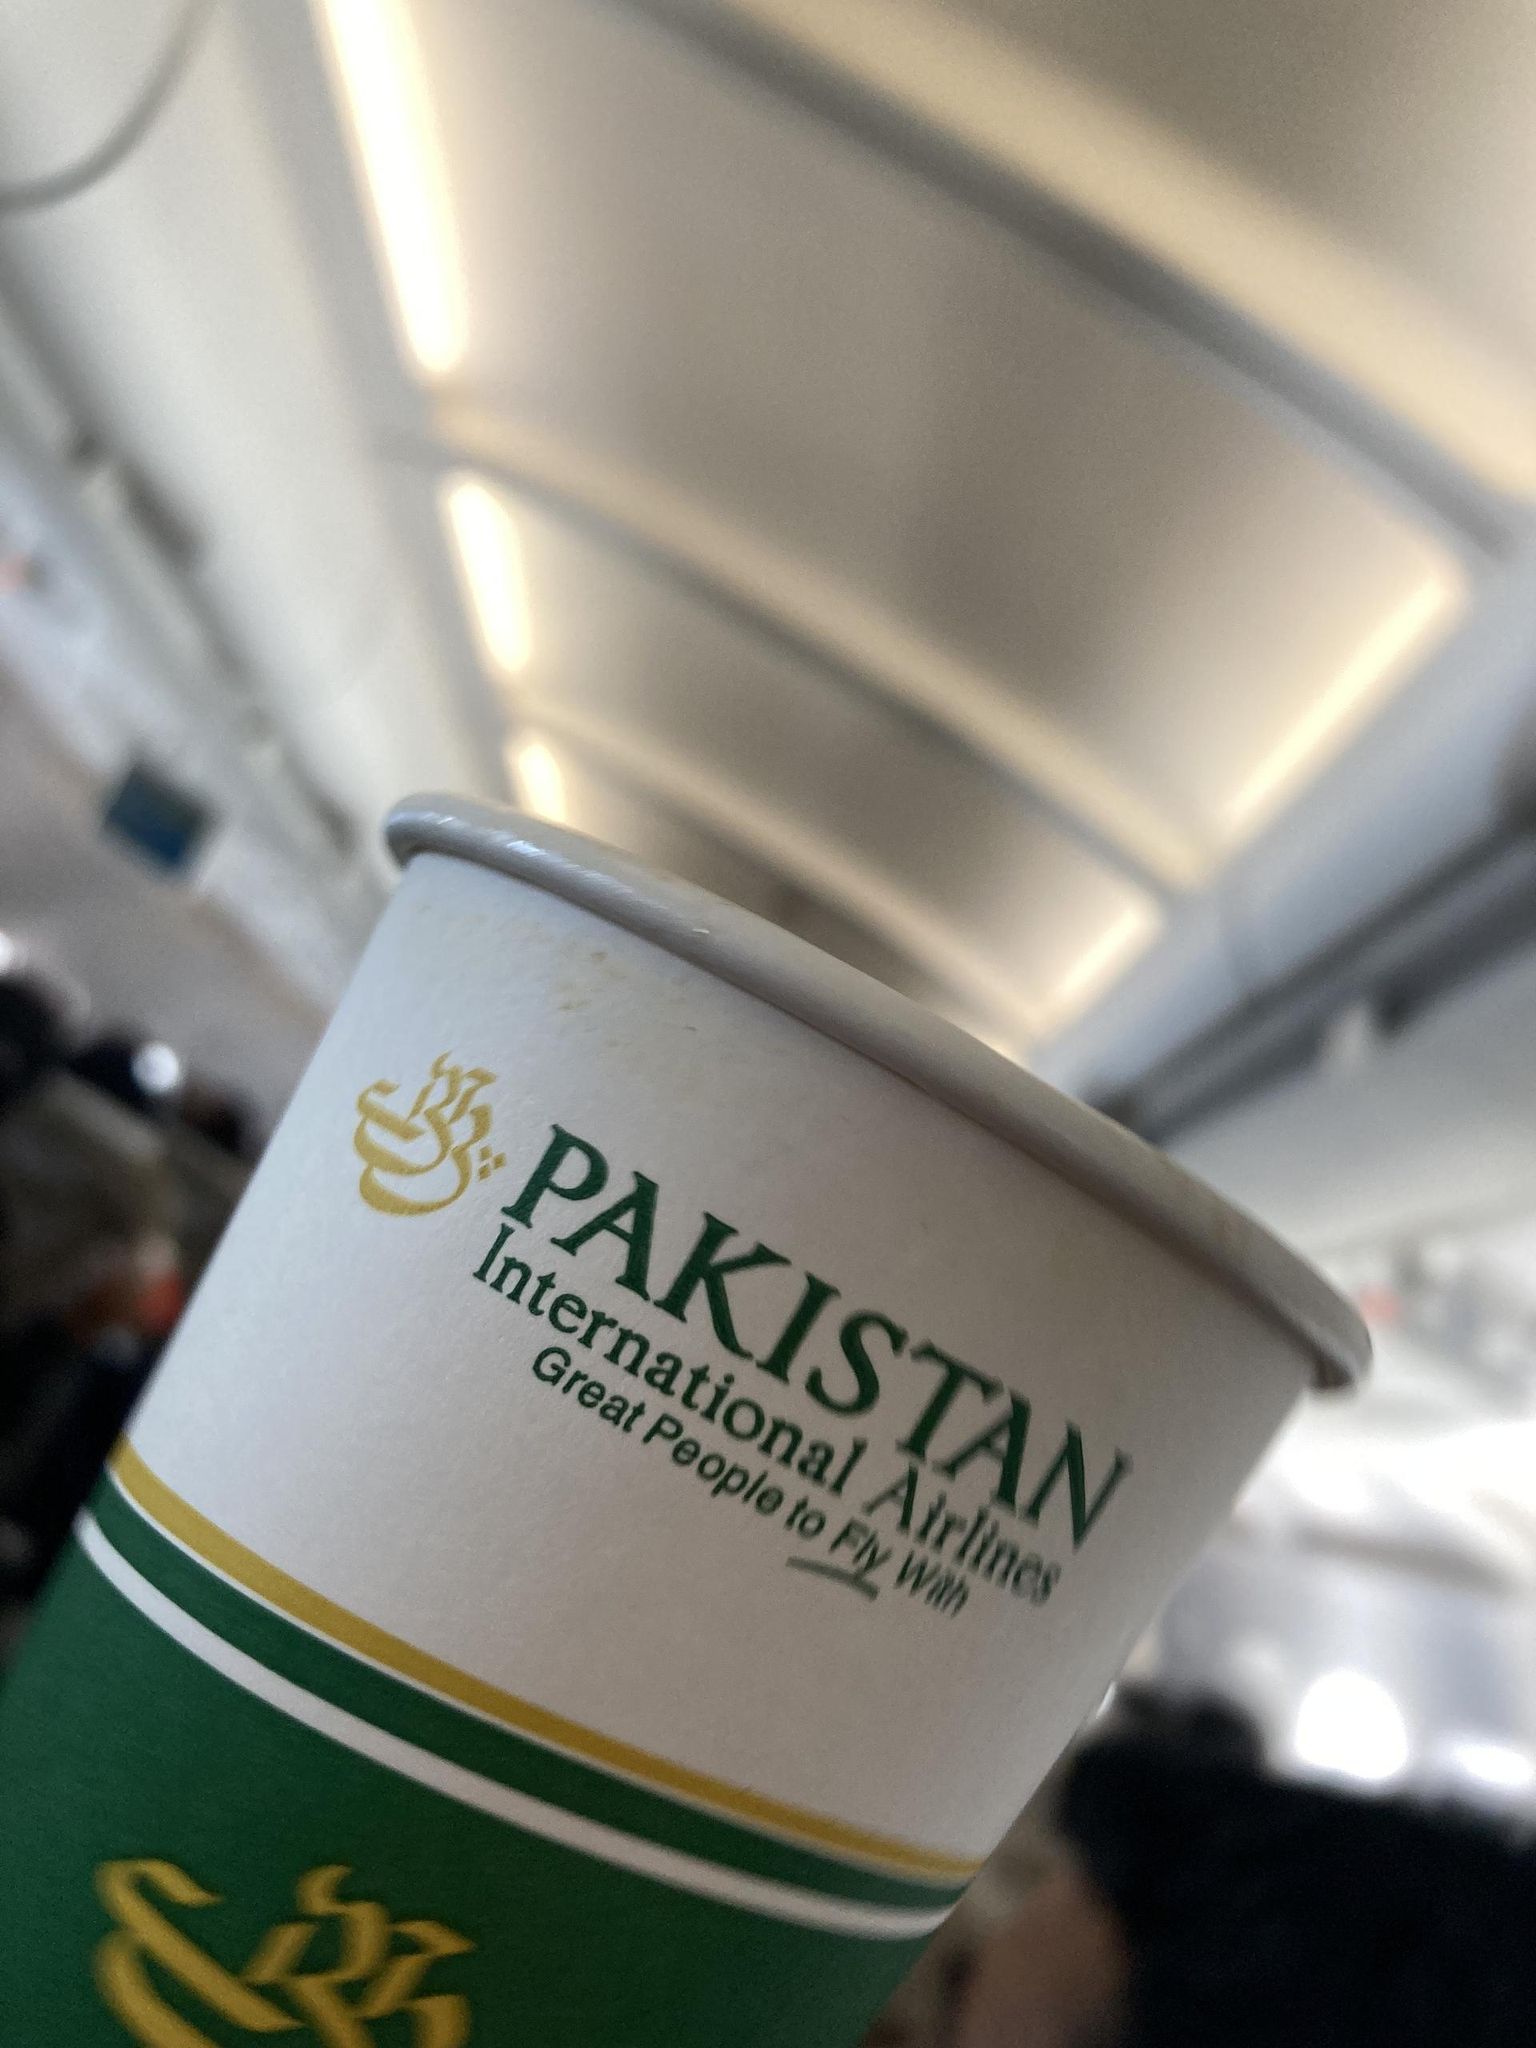 Pakistan International Airlinesi lipukiri: suurepärased inimesed, kellega lennata.